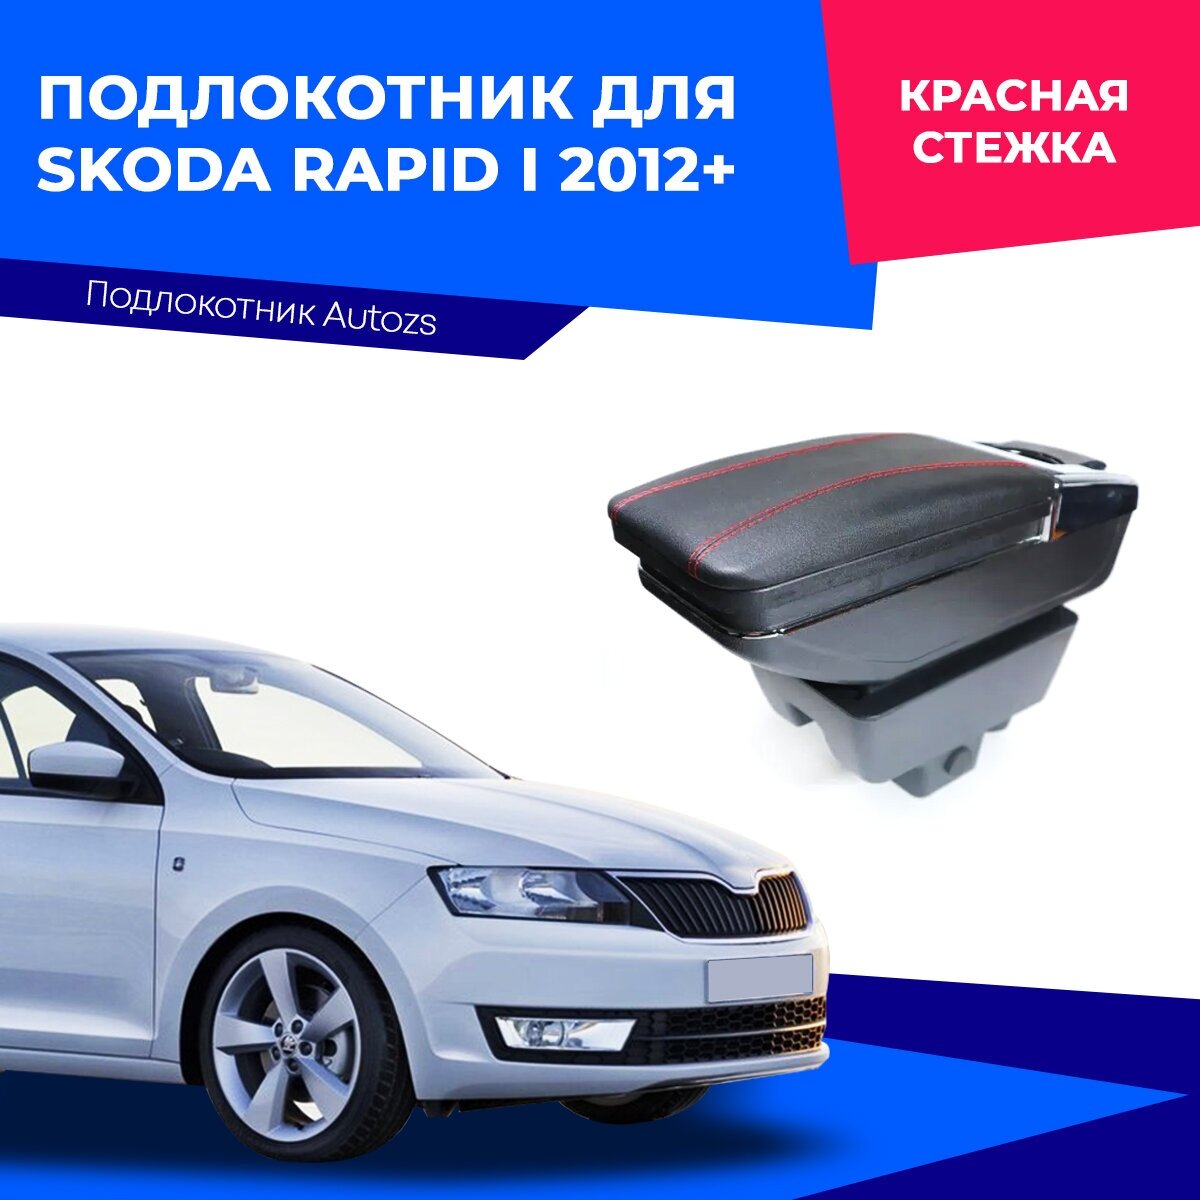 Подлокотник для Skoda Rapid I 2012+ (без USB)/ Шкода Рапид 1 2012+, экокожа